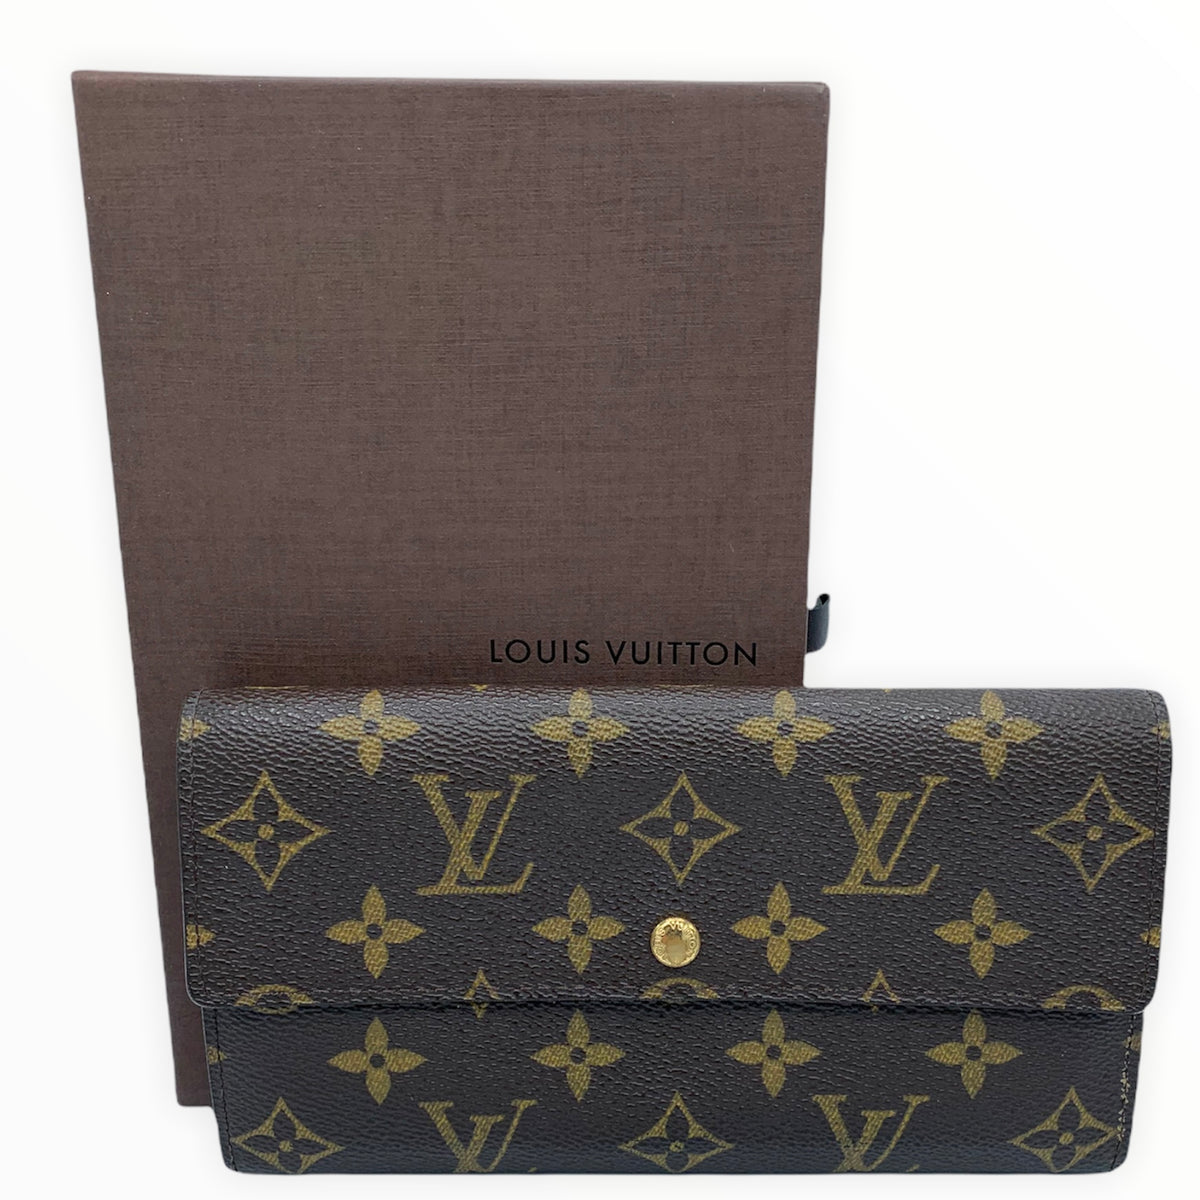 Louis Vuitton, Bags, 992 Authentic Louis Vuitton Sarah Wallet Monogram  With Credit Card Slots